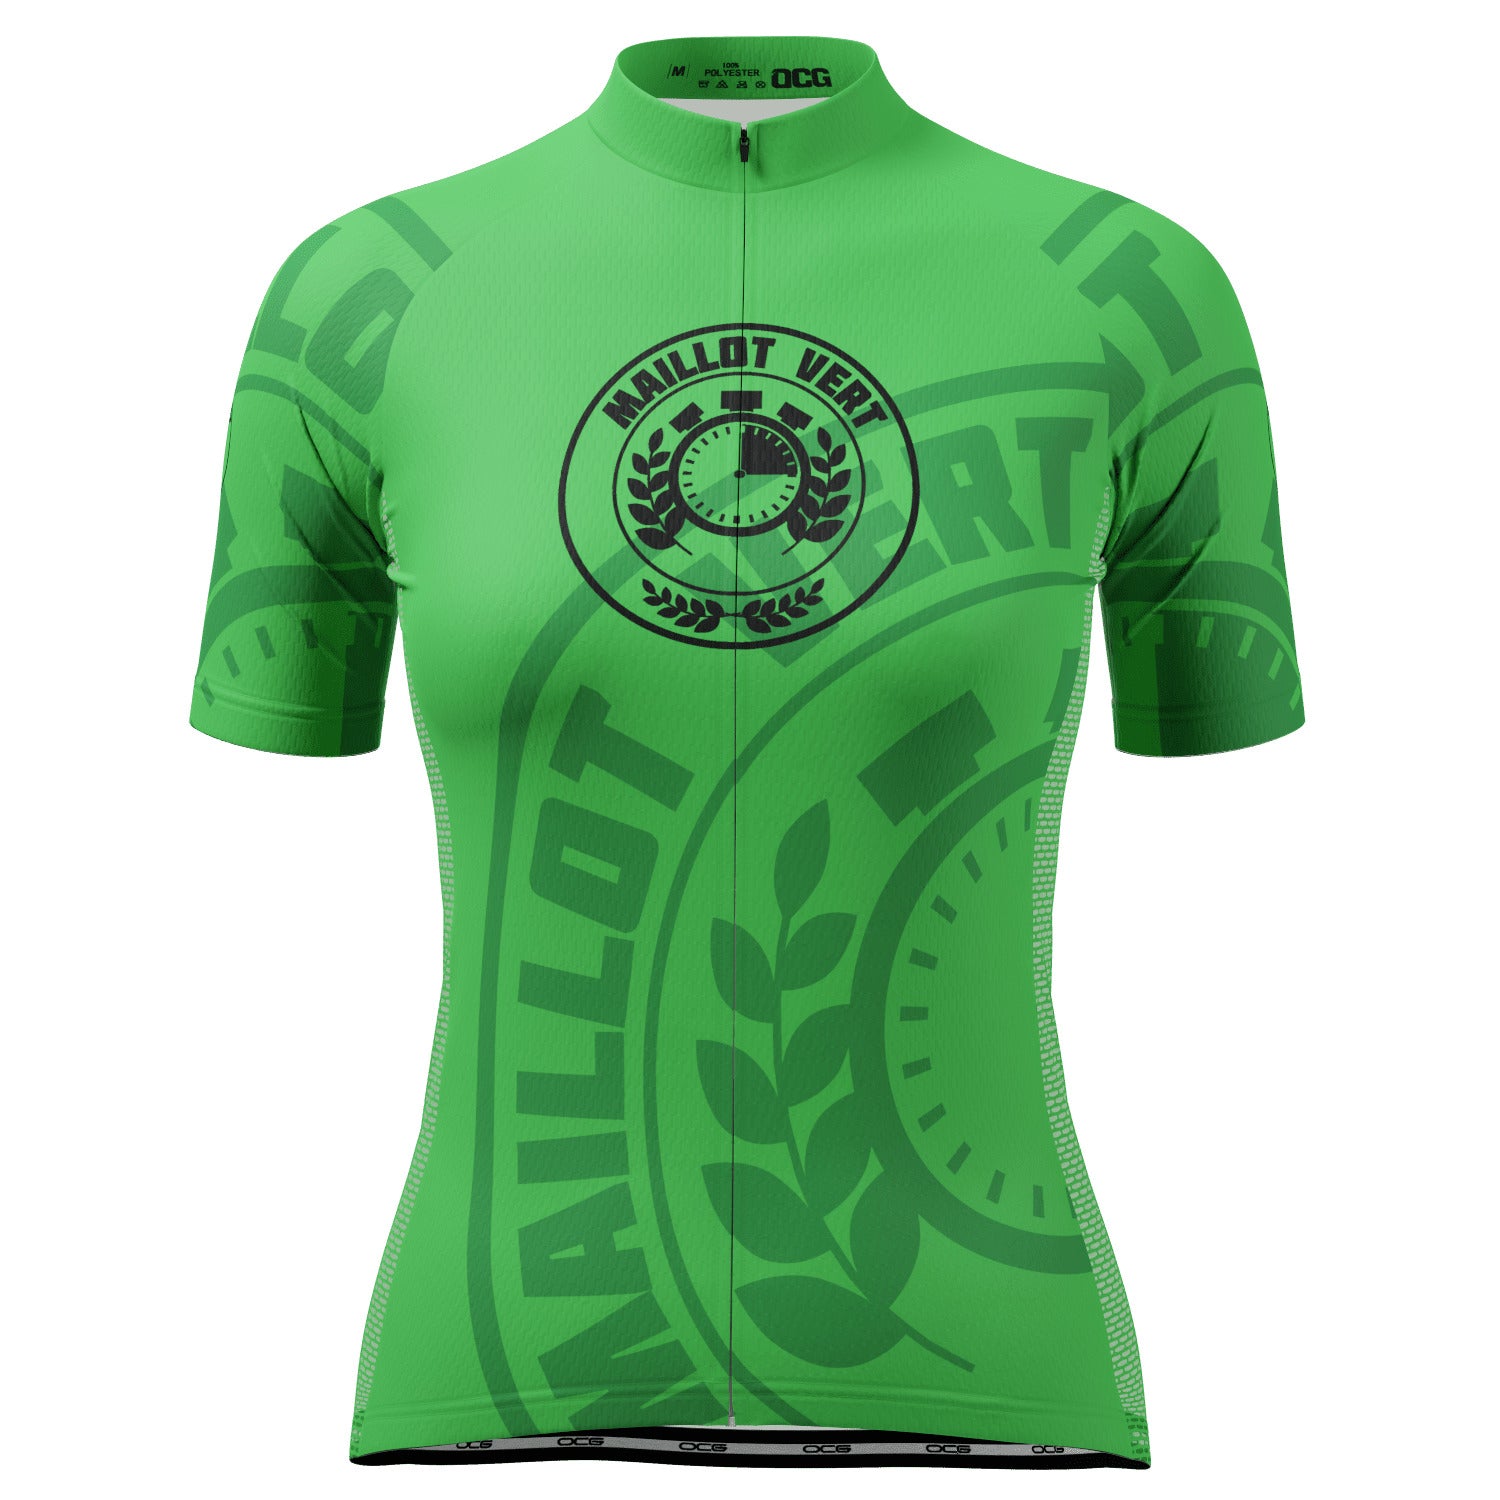 Women's Green Sprinters Maillot Vert Short Sleeve Cycling Jersey